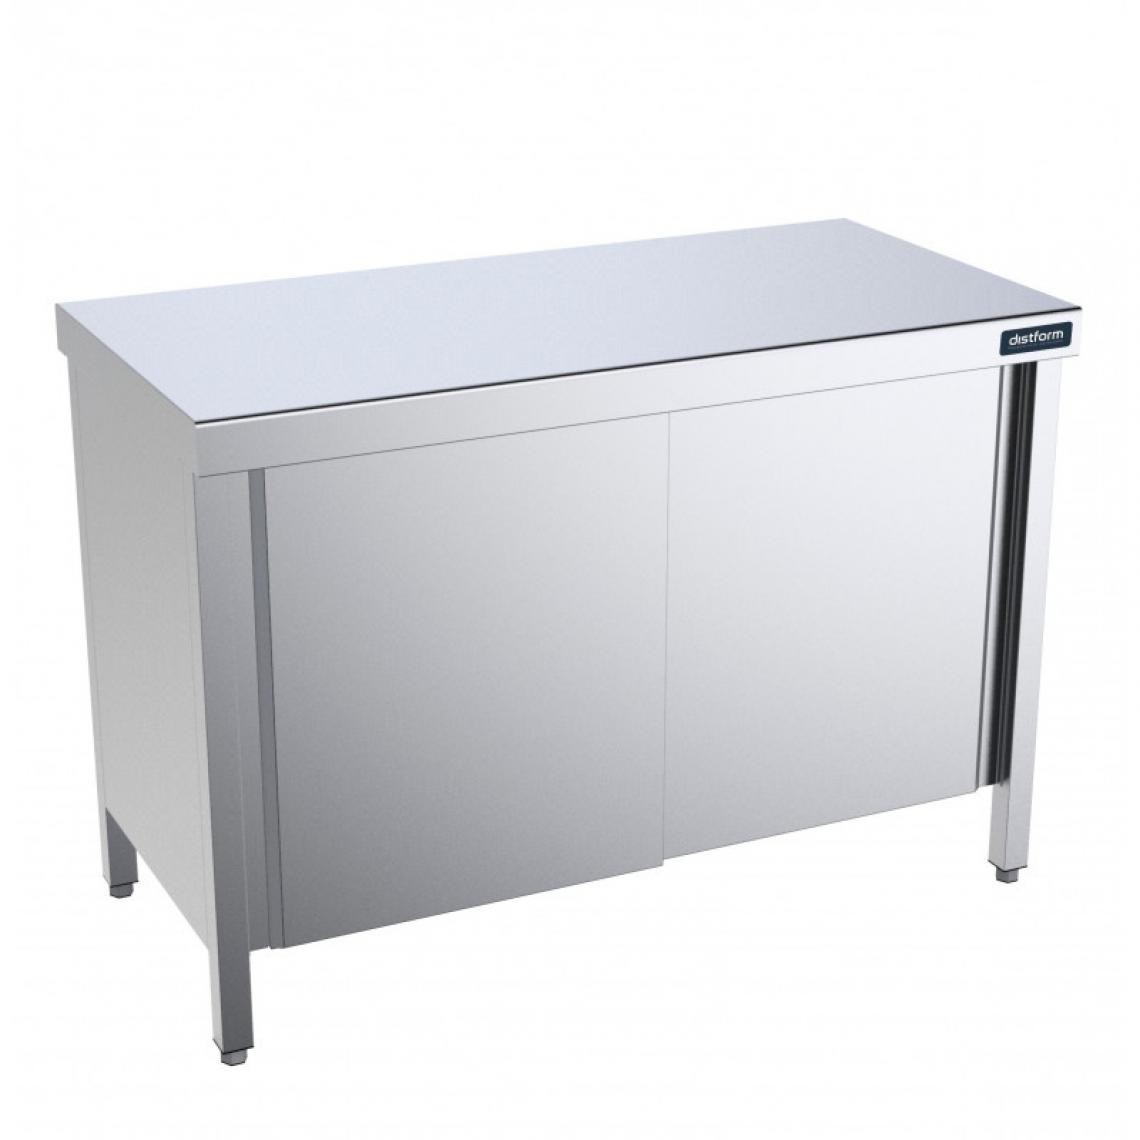 DISTFORM - Table Centrale avec Portes Battantes Profondeur 600mm - Distform - Acier inoxydable1400 x 600 - Tables à manger